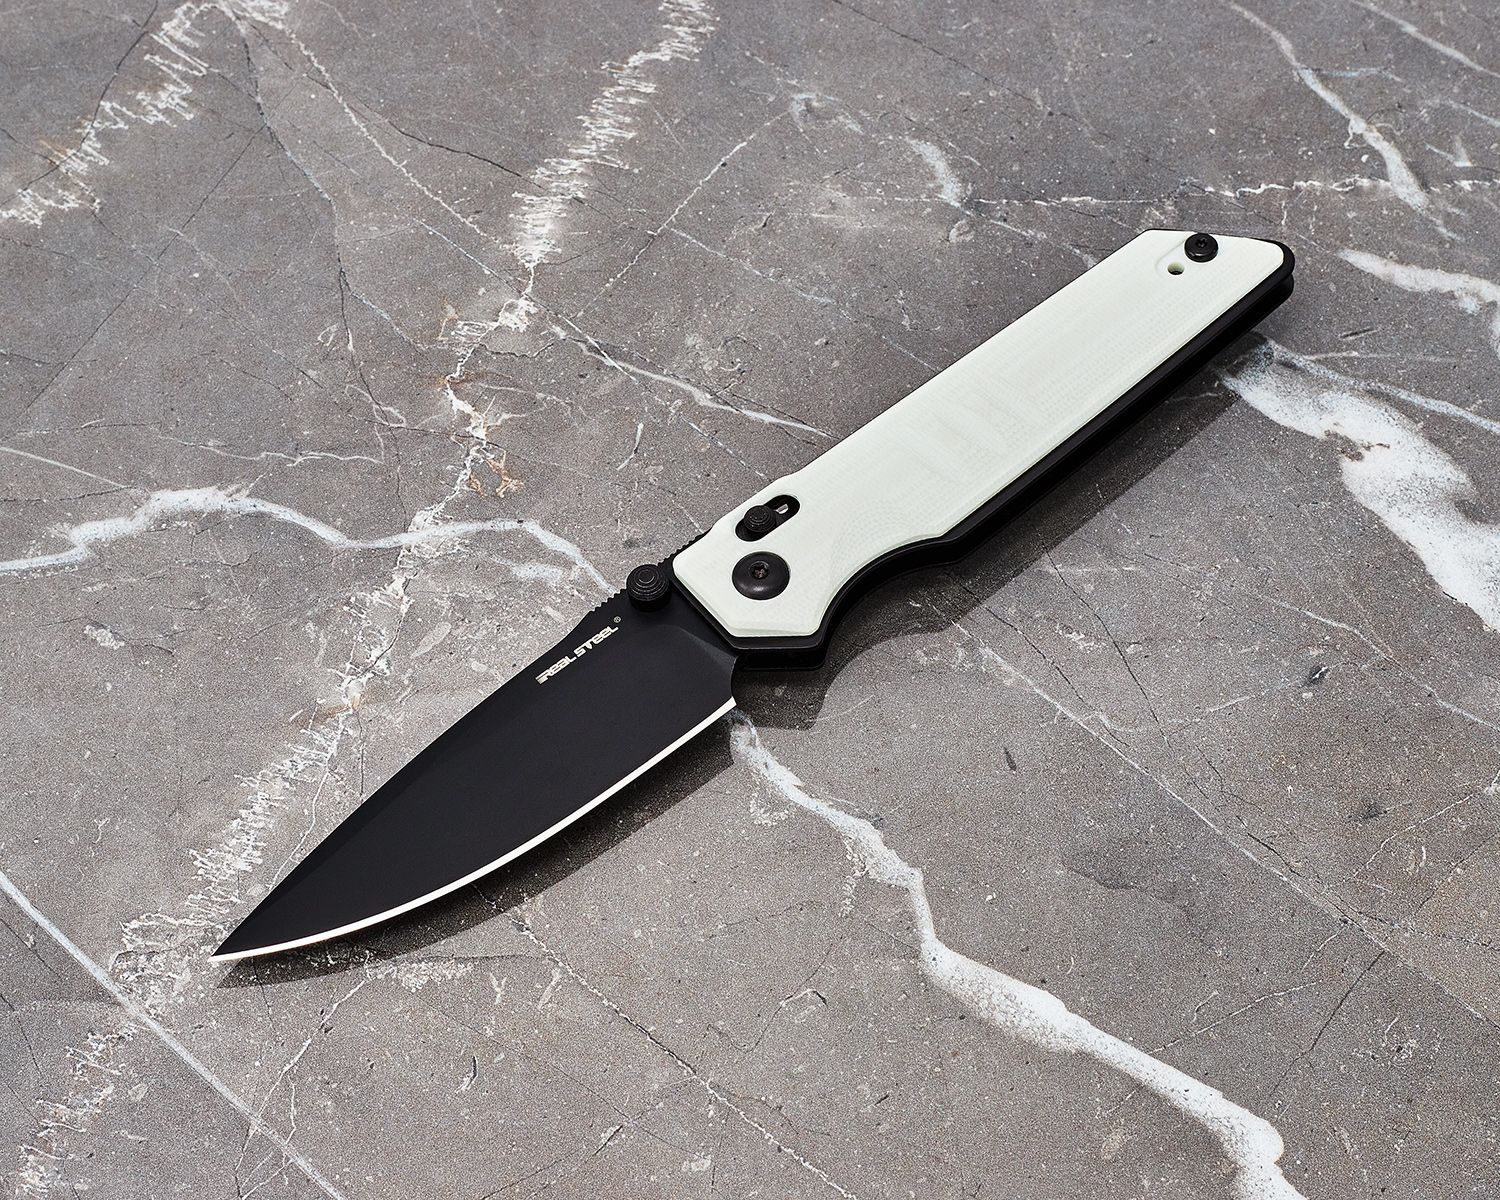  Real Steel Sacra Folding Pocket Knife - Bohler K110 Blade, G10  Handle - Camping, Hiking, EDC - Men and Women - Black/Natural : Tools &  Home Improvement